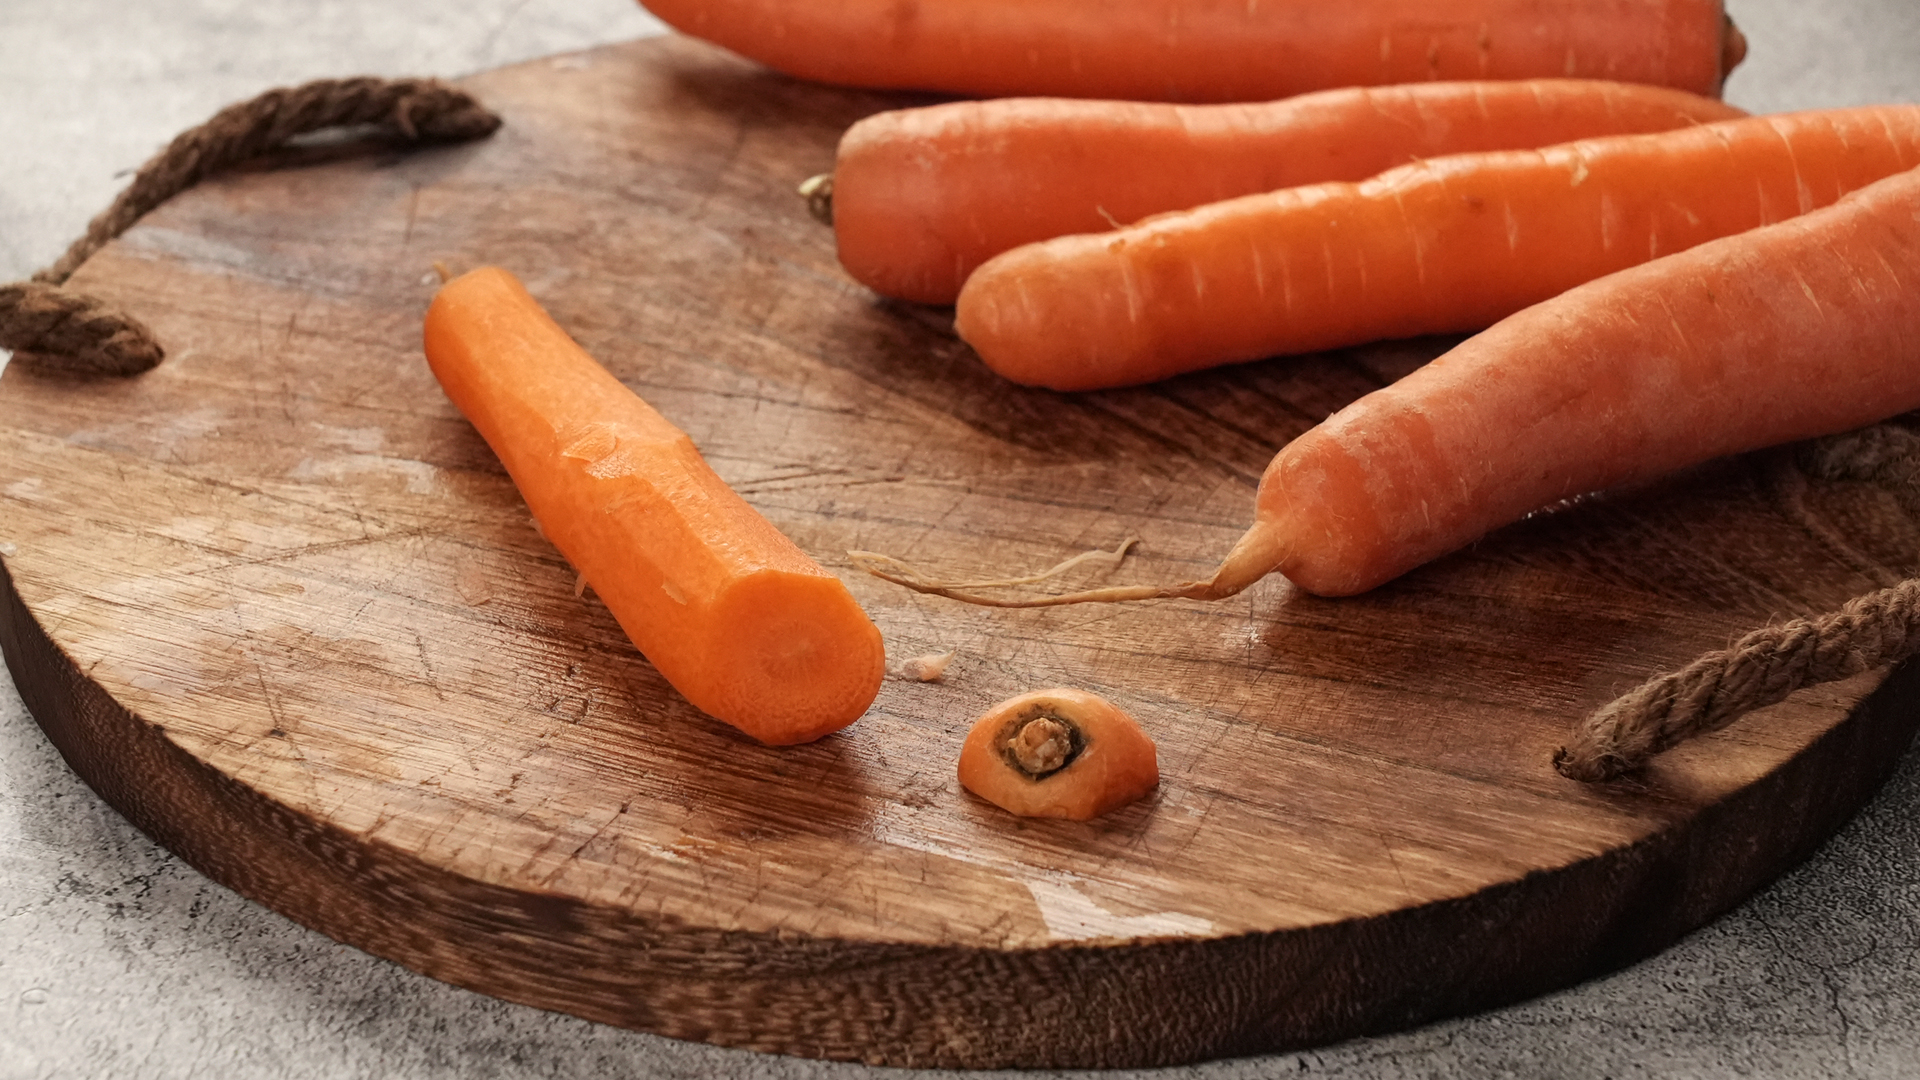 Carrot Benefits: सर्दी के मौसम में गाजर अपनी Daily Routine में करें शामिल, इन बीमारियों से रहेंगे कोसो दूर